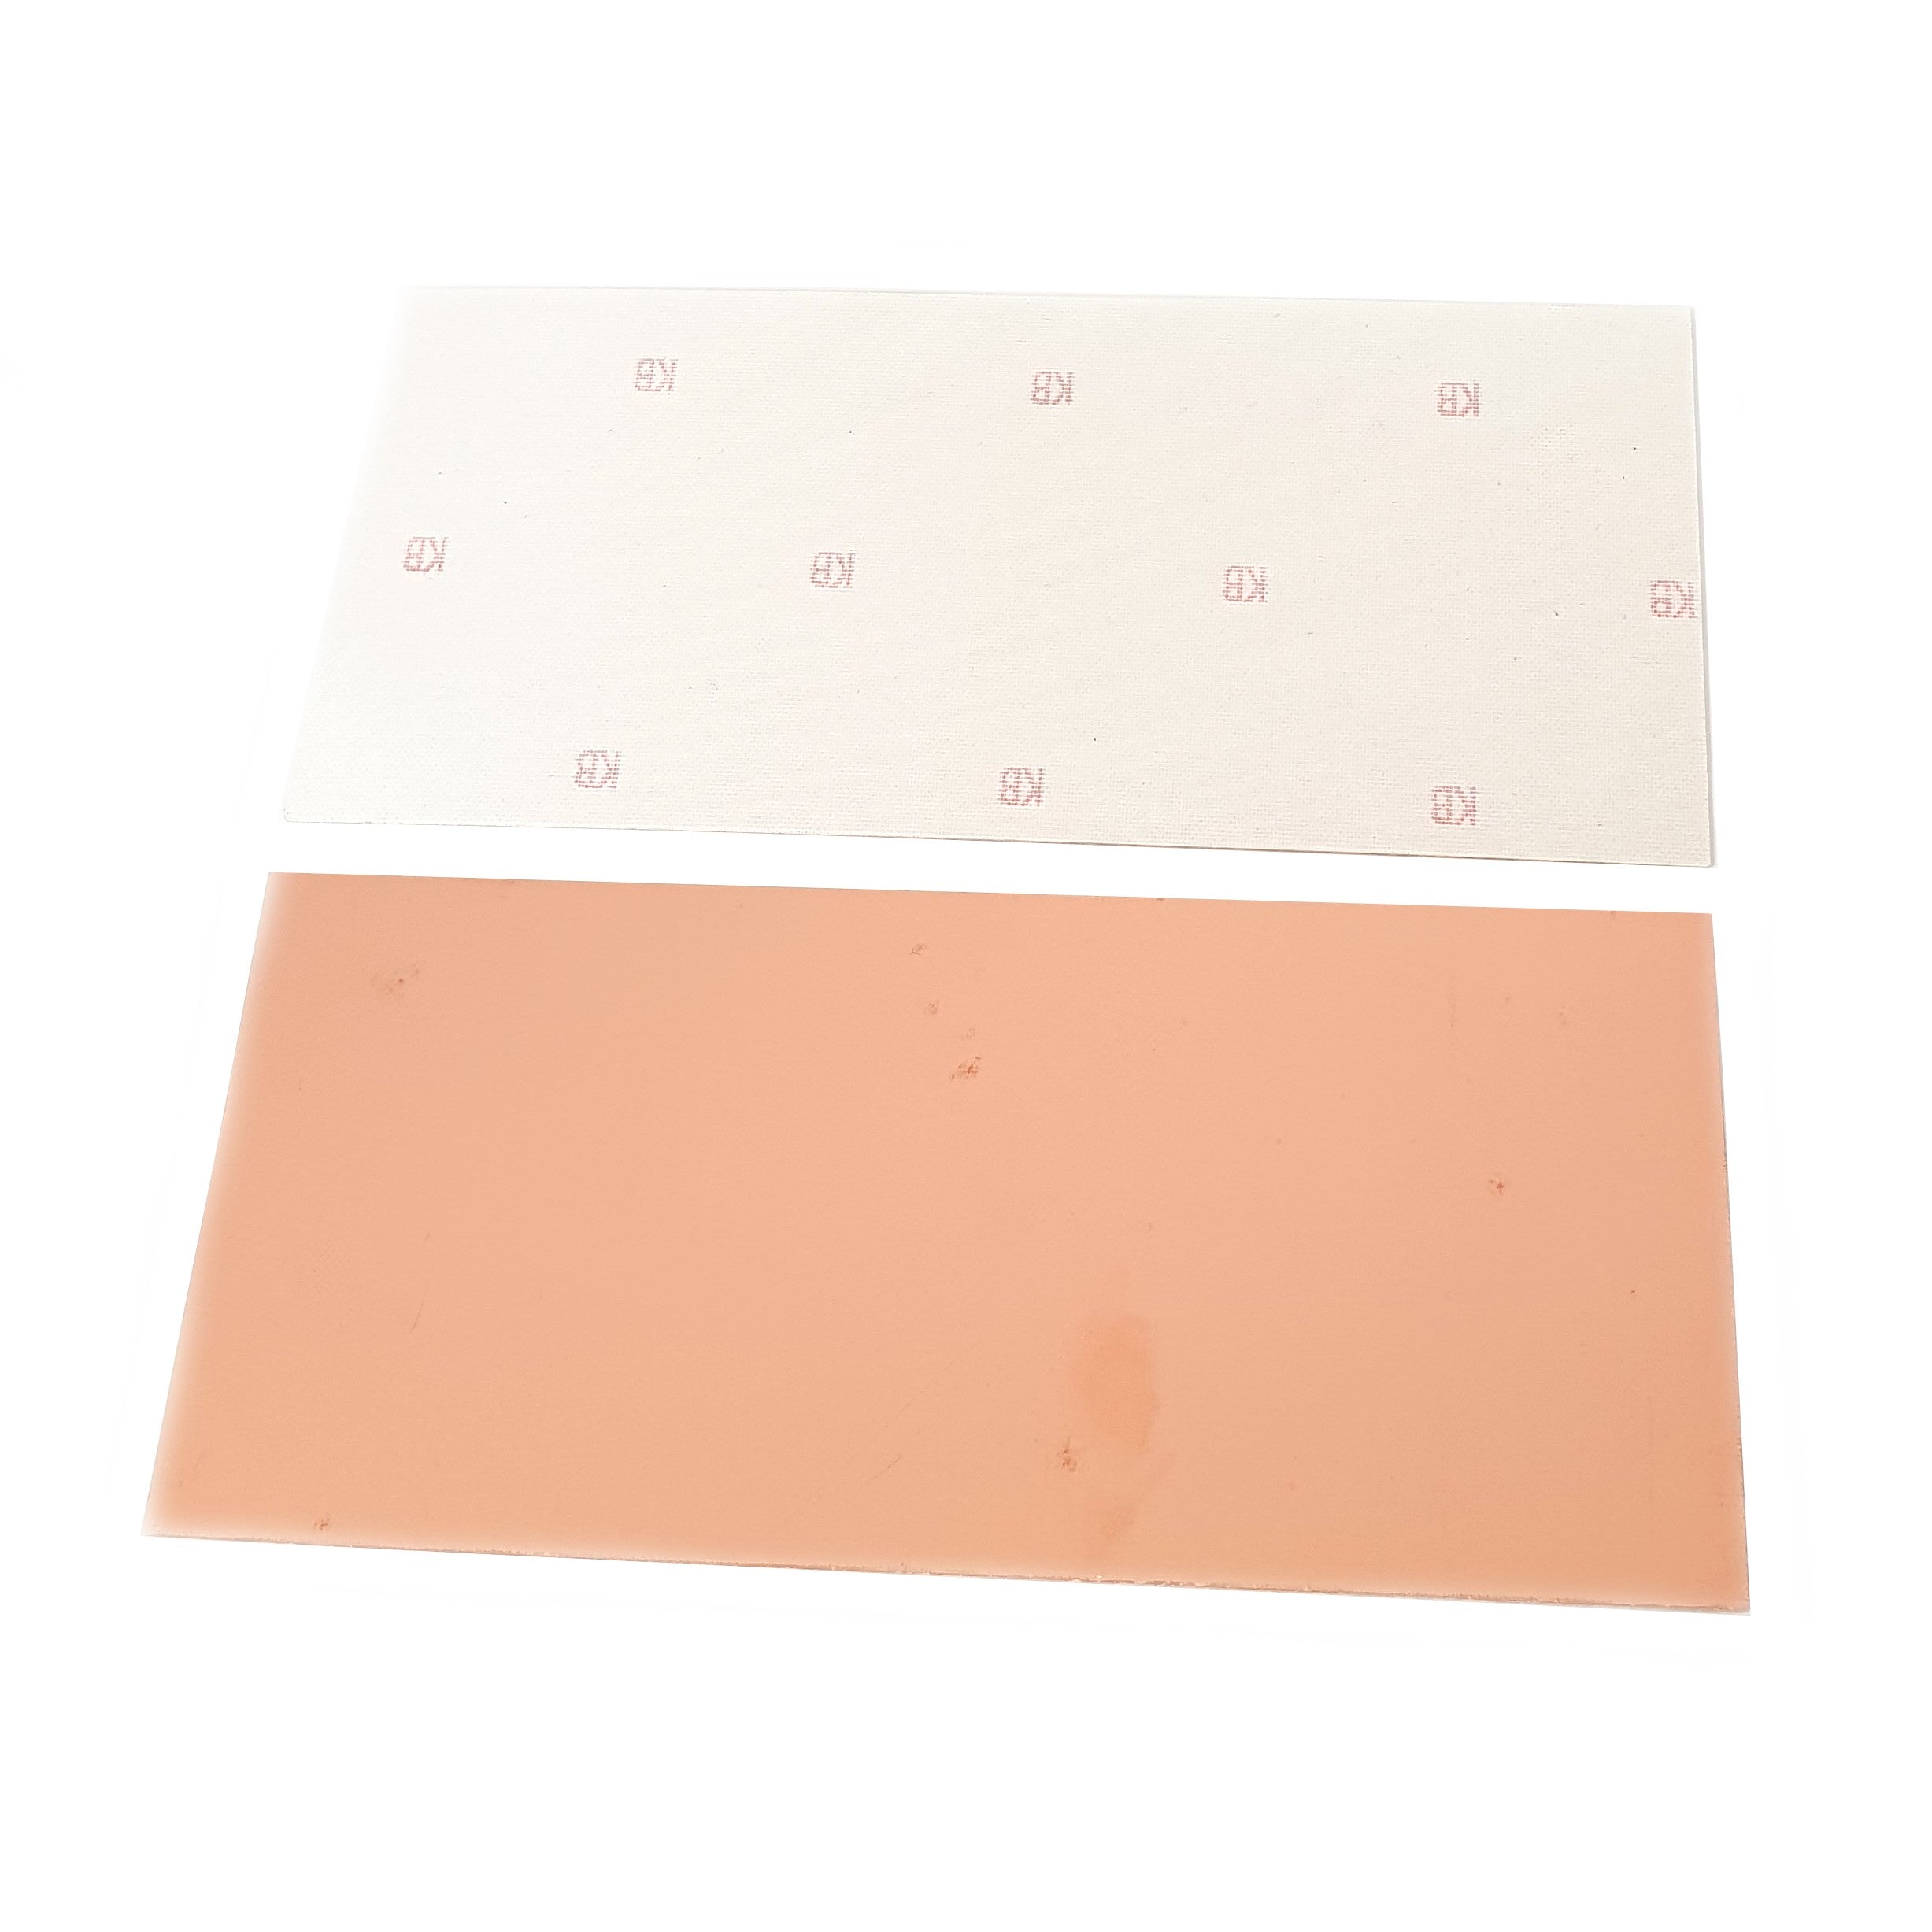 Single Sided Copper Clad Board 233x160mm